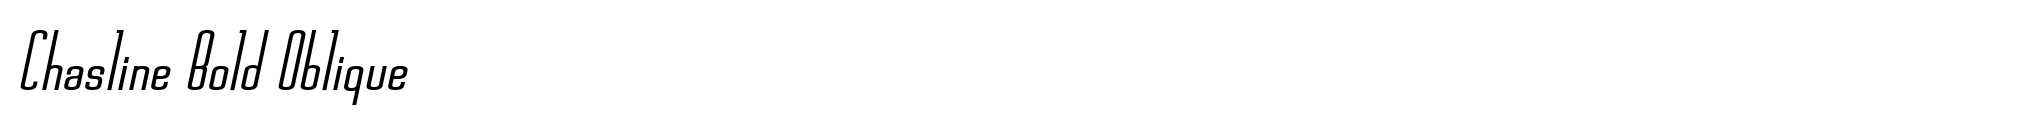 Chasline Bold Oblique image